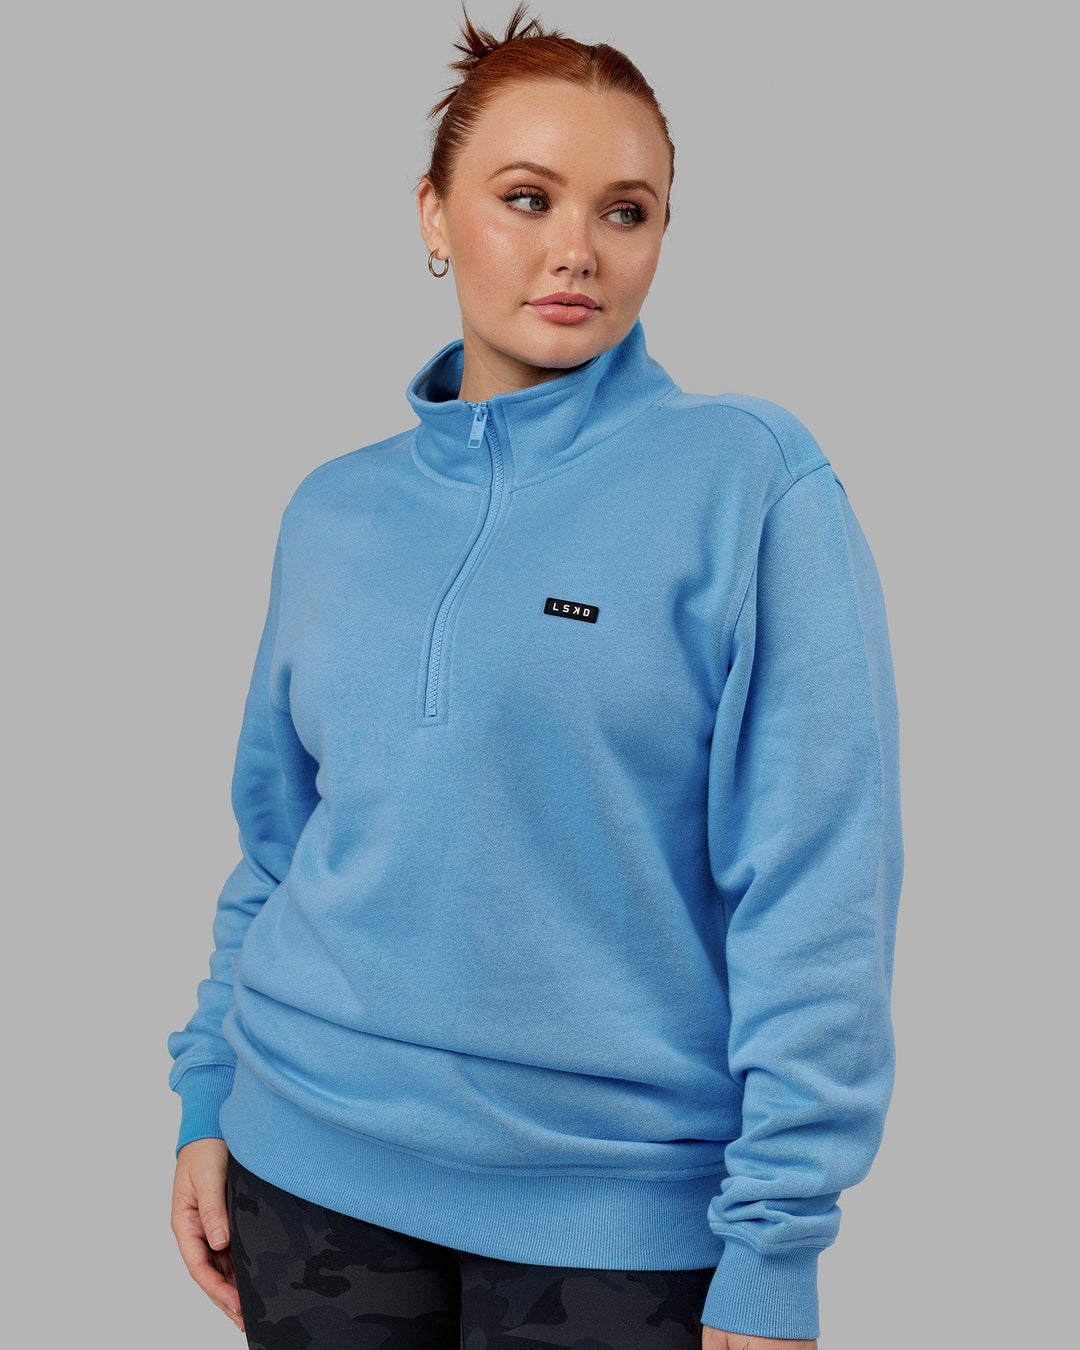 Woman wearing Unisex Fundamental 1/4 Zip Sweater - Azure Blue